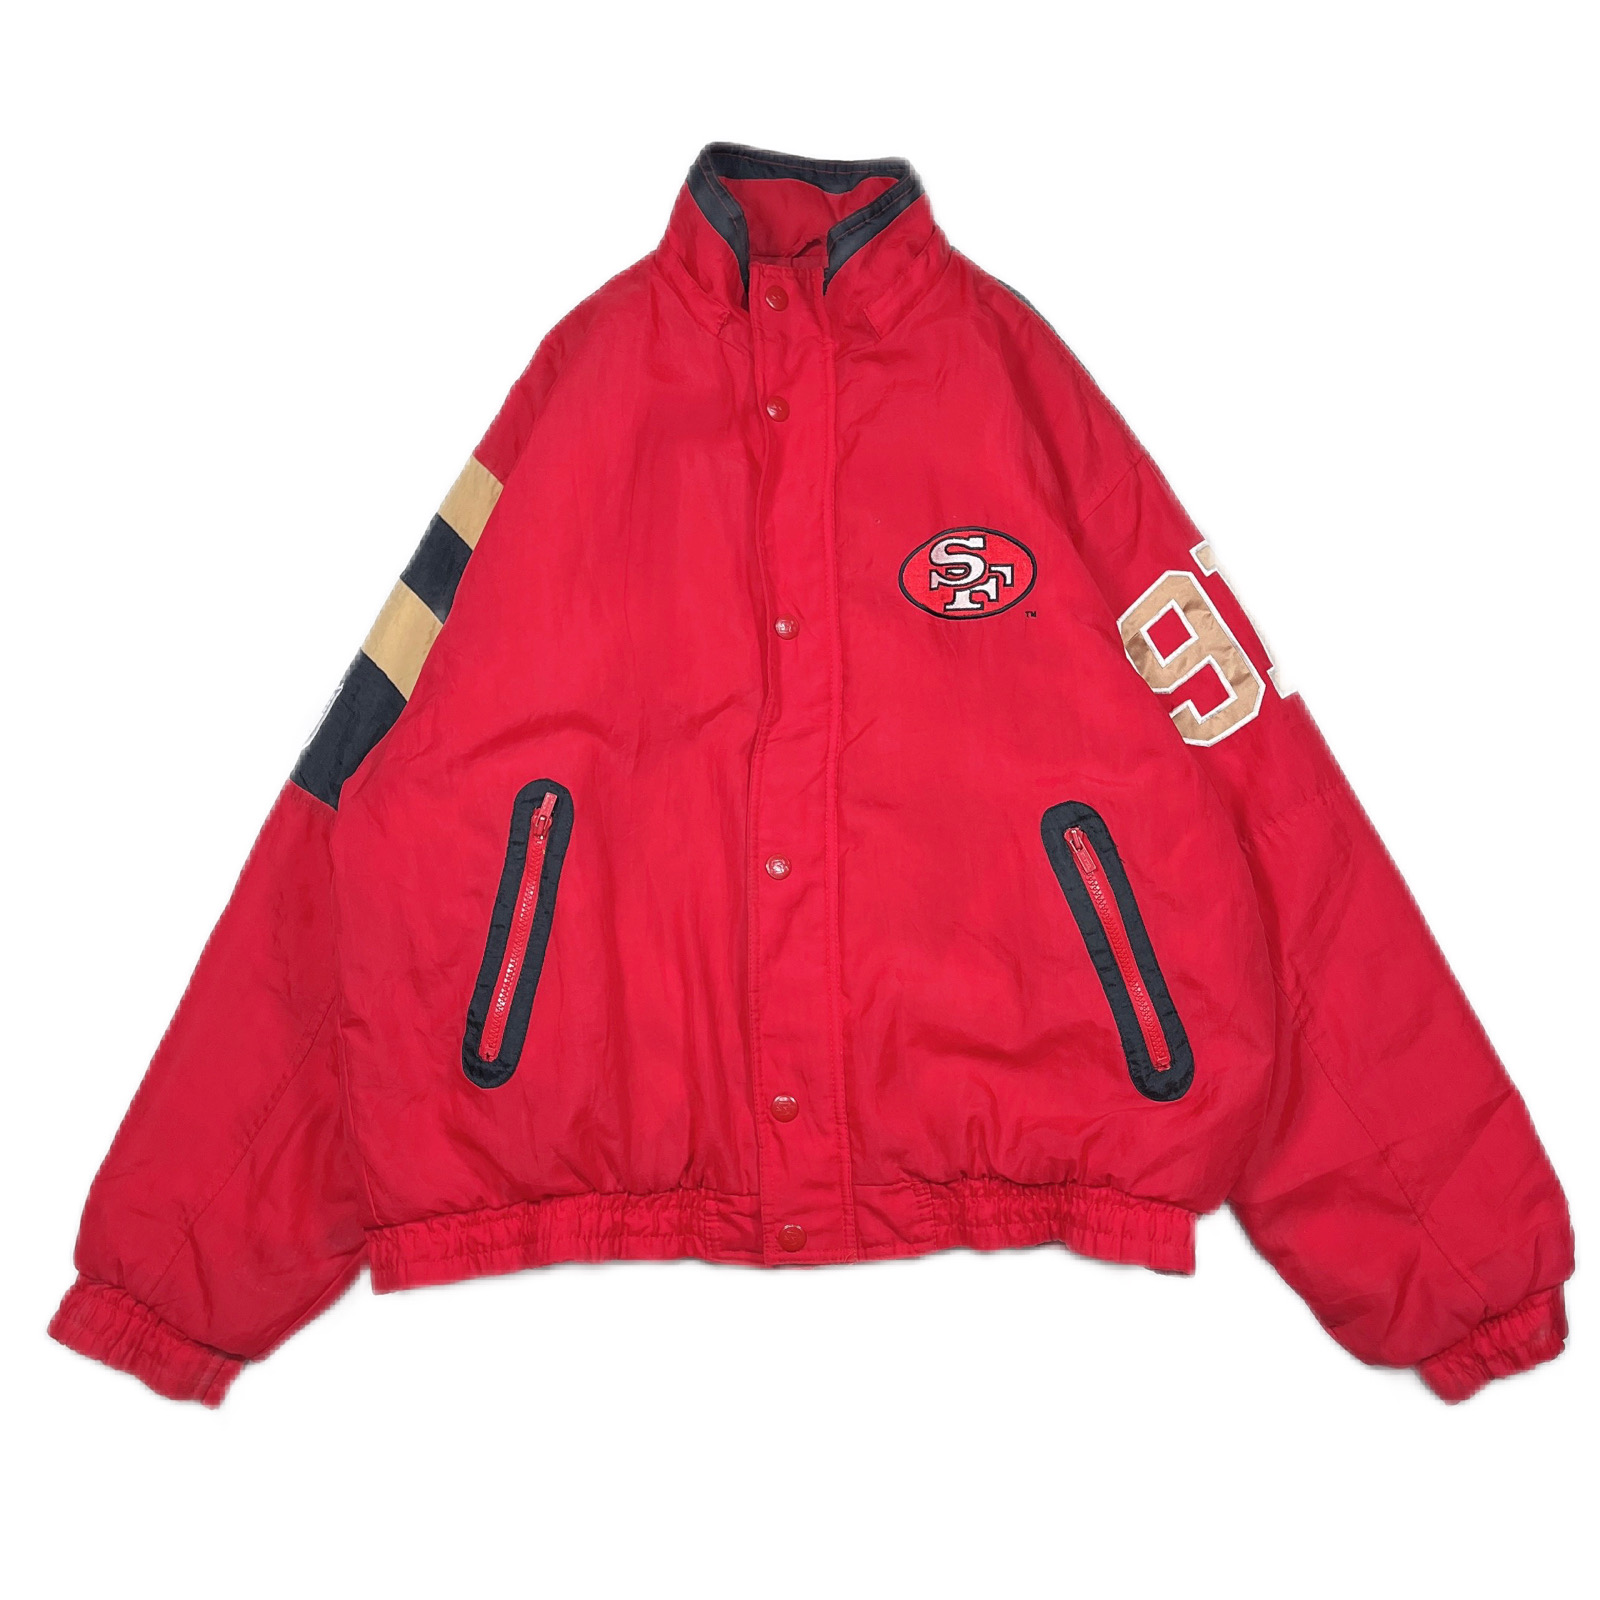 Lsize NFL STARTER 49ERS nylon jacket 231105001 アメフト スターター 